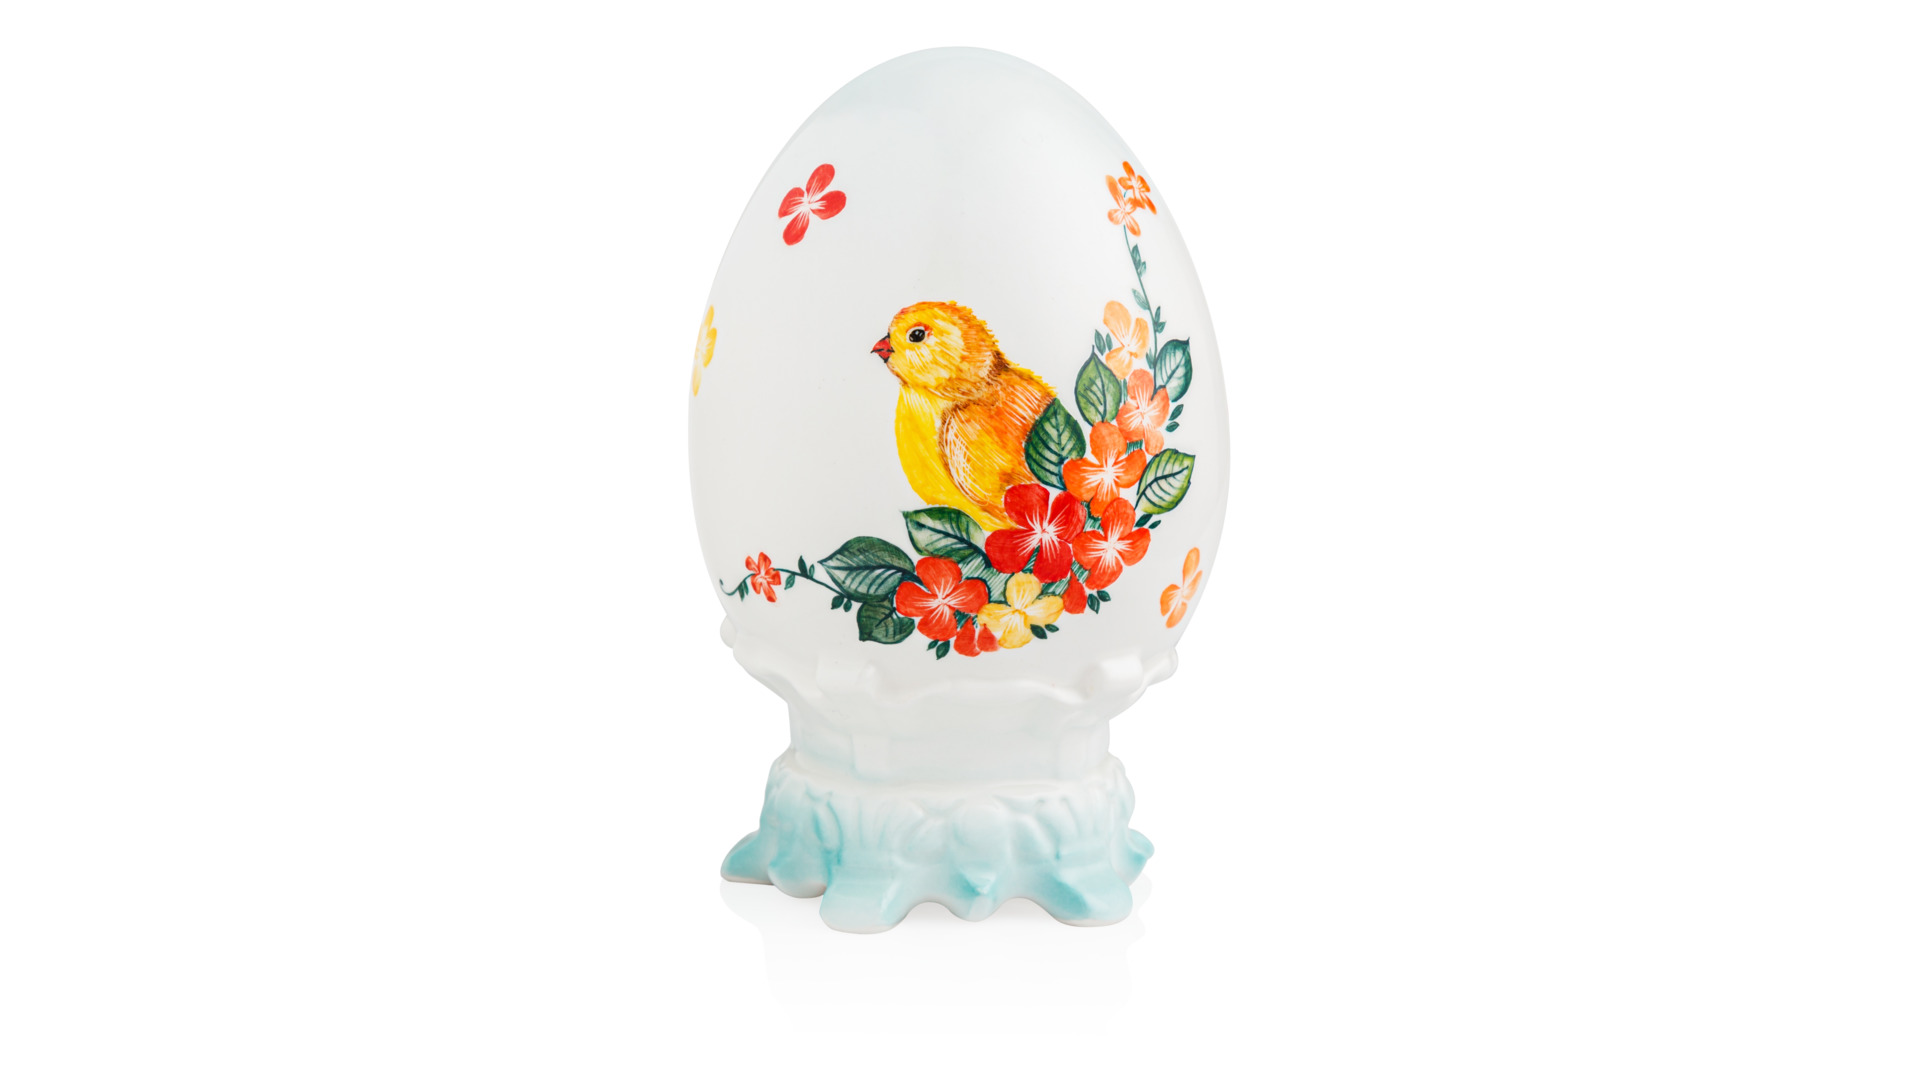 Пасхальное яйцо Терра керамос, фарфор, подглазурная роспись